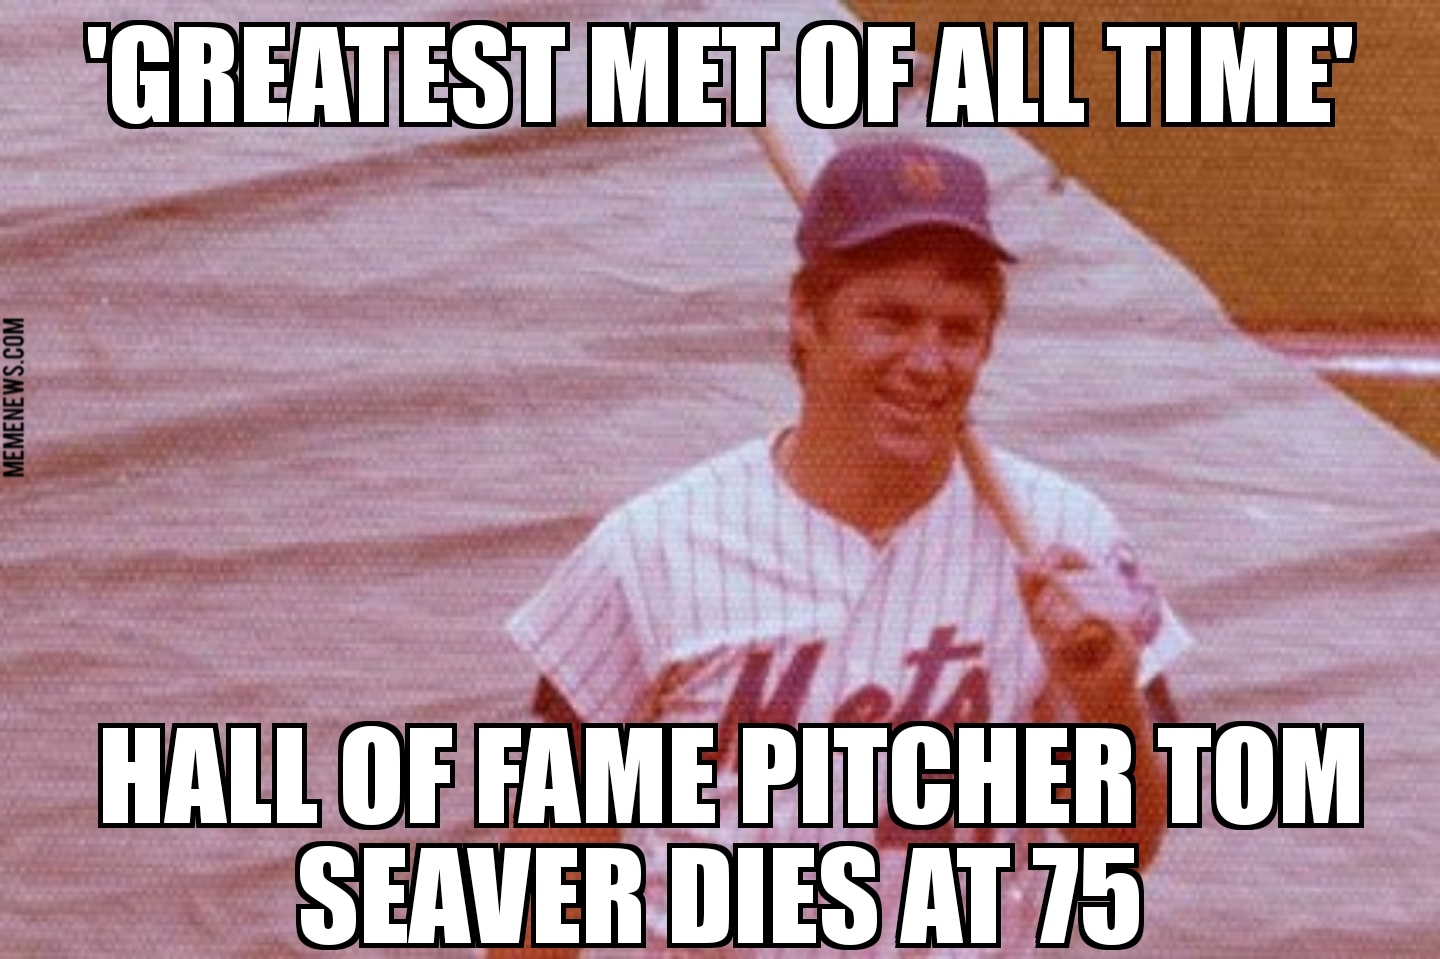 Mets legend Tom Seaver dies